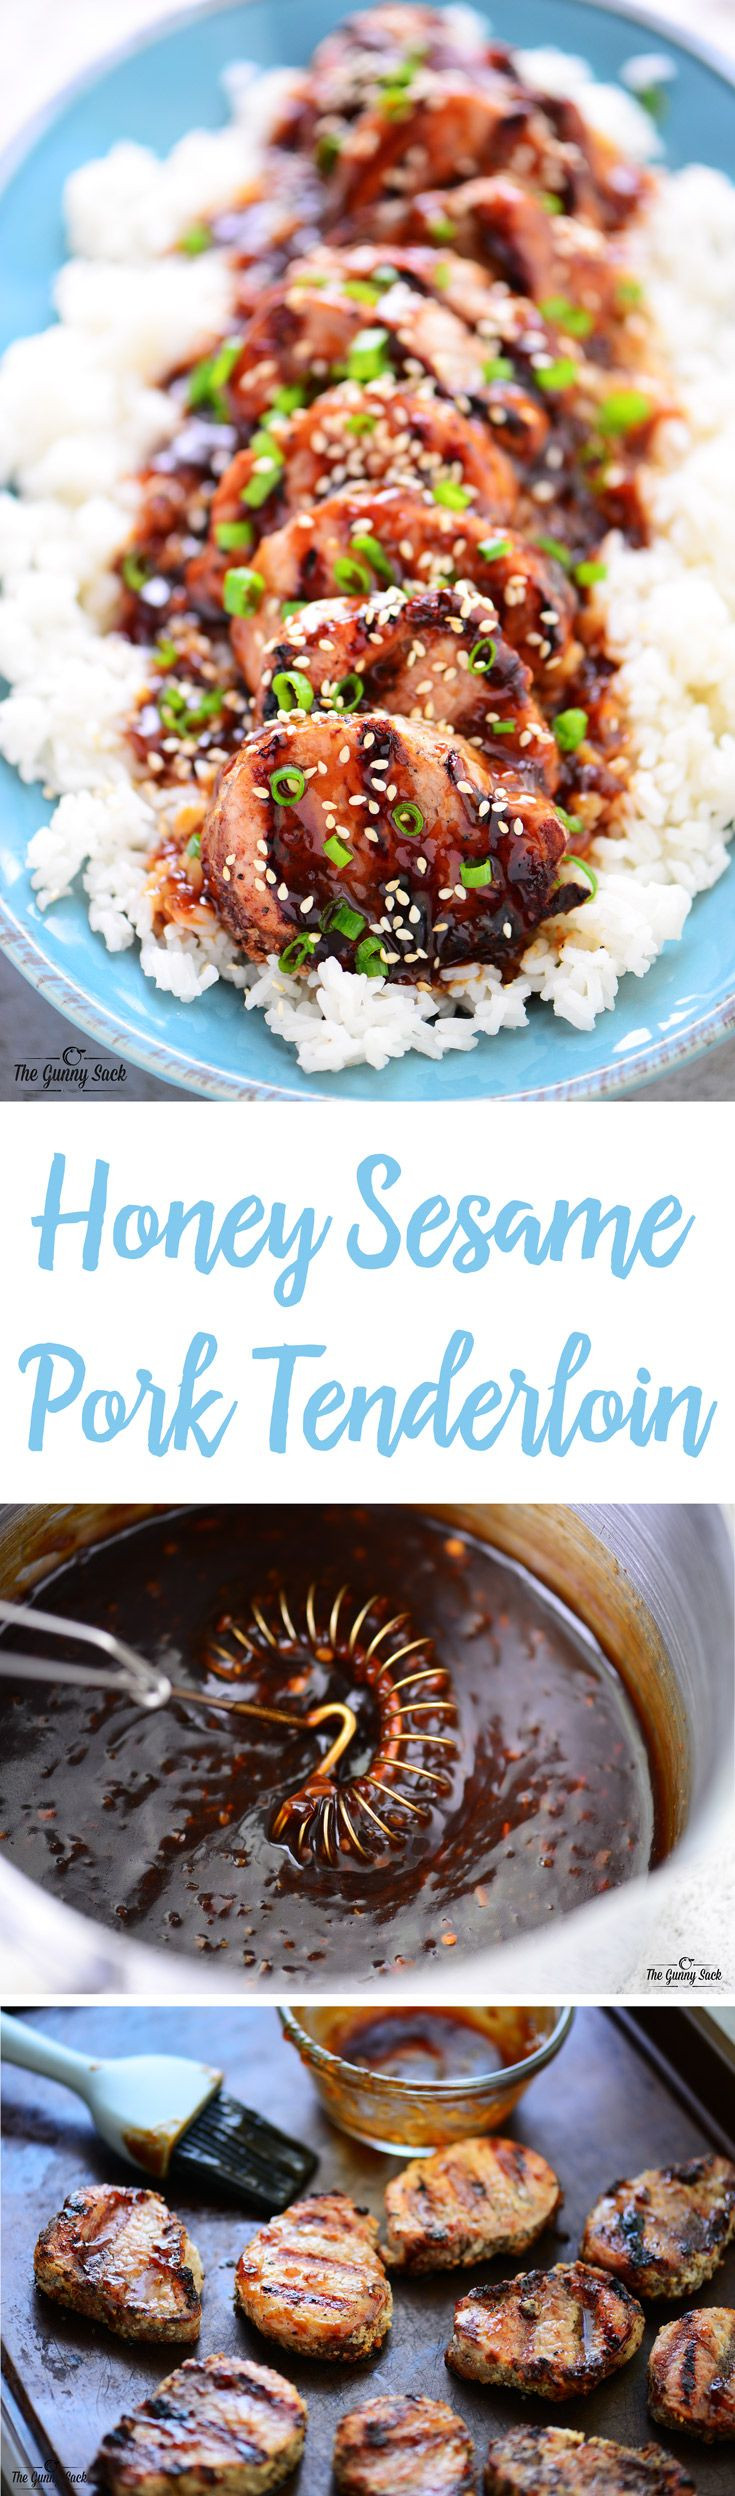 Pork Tenderloin Dinner Ideas
 This Honey Sesame Pork Tenderloin is an easy family dinner